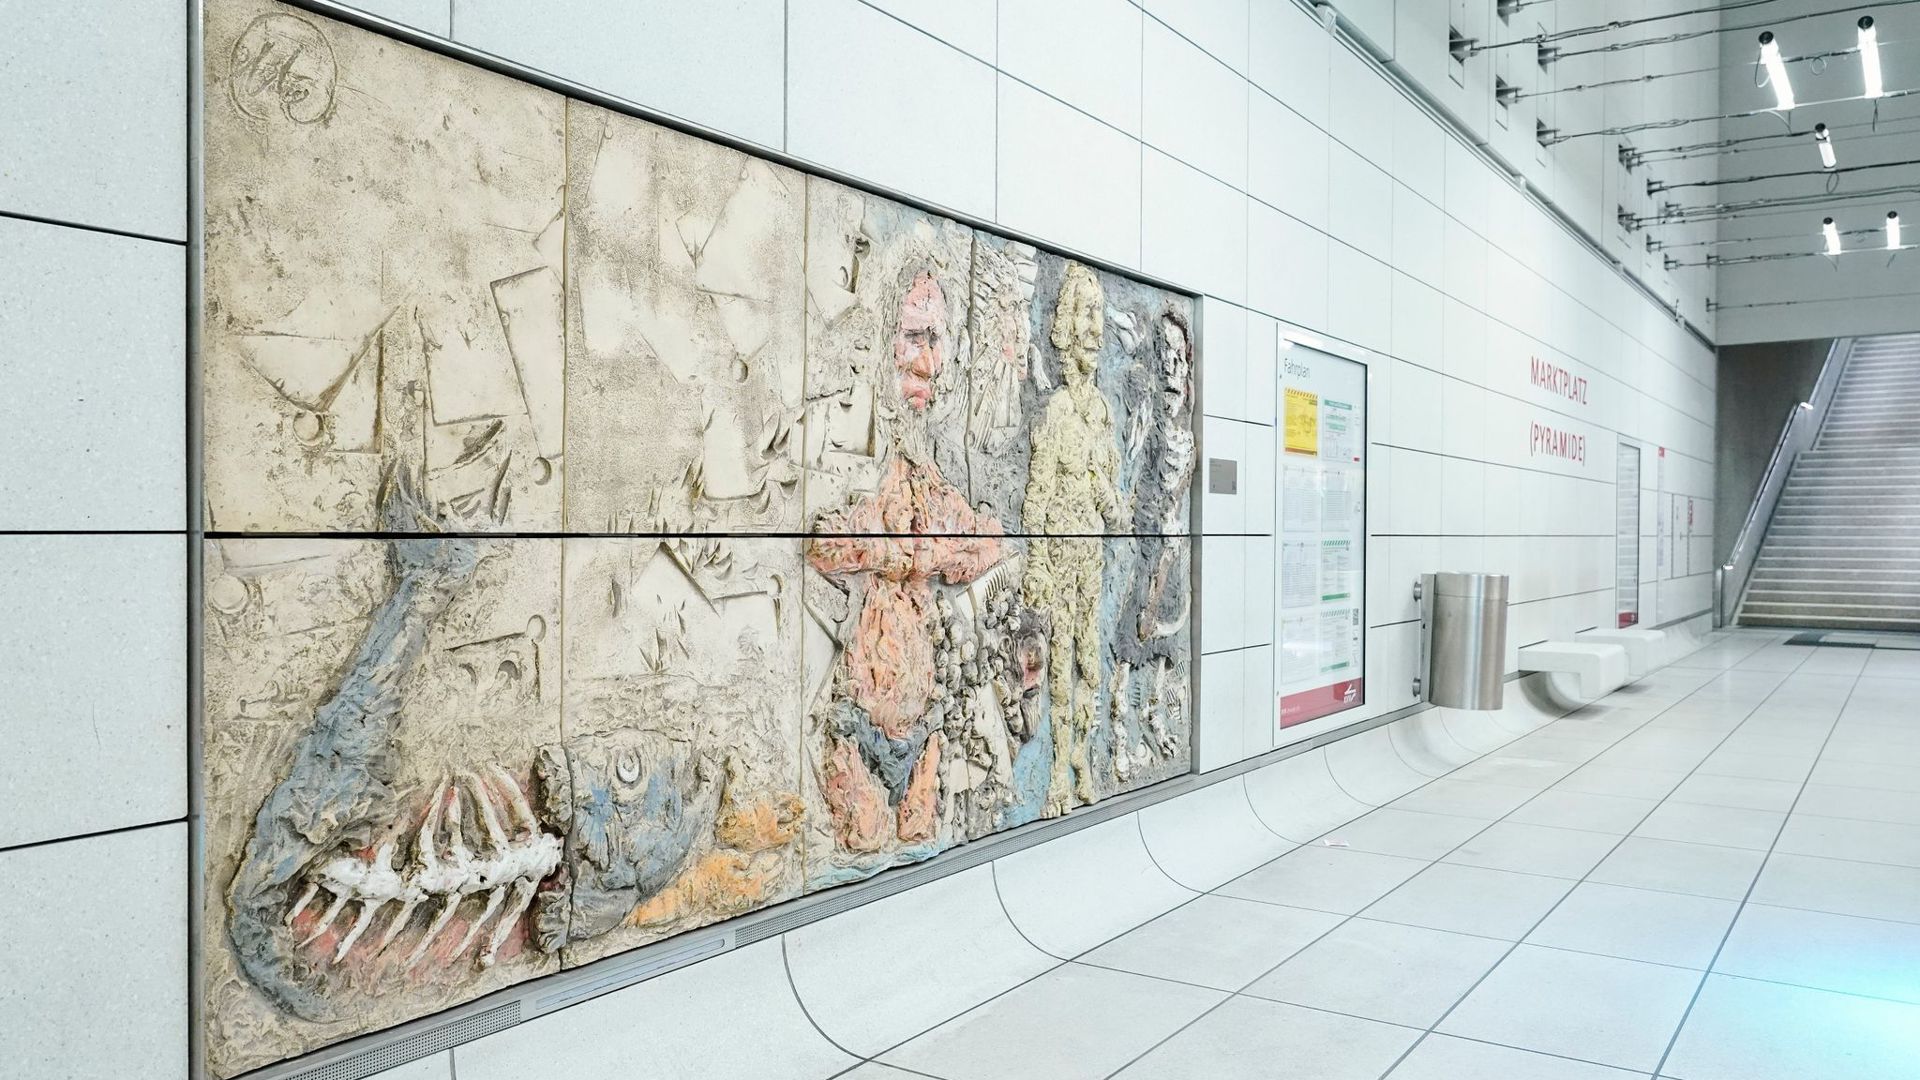 Das Kunstwerk mit dem Titel „Die Locken einer Frau“ des Künstler Markus Lüpertz ist bei der Enthüllung der Lüpertz-Kunstwerke zum Thema „Genesis“ an der U-Bahn-Haltestelle zu sehen.